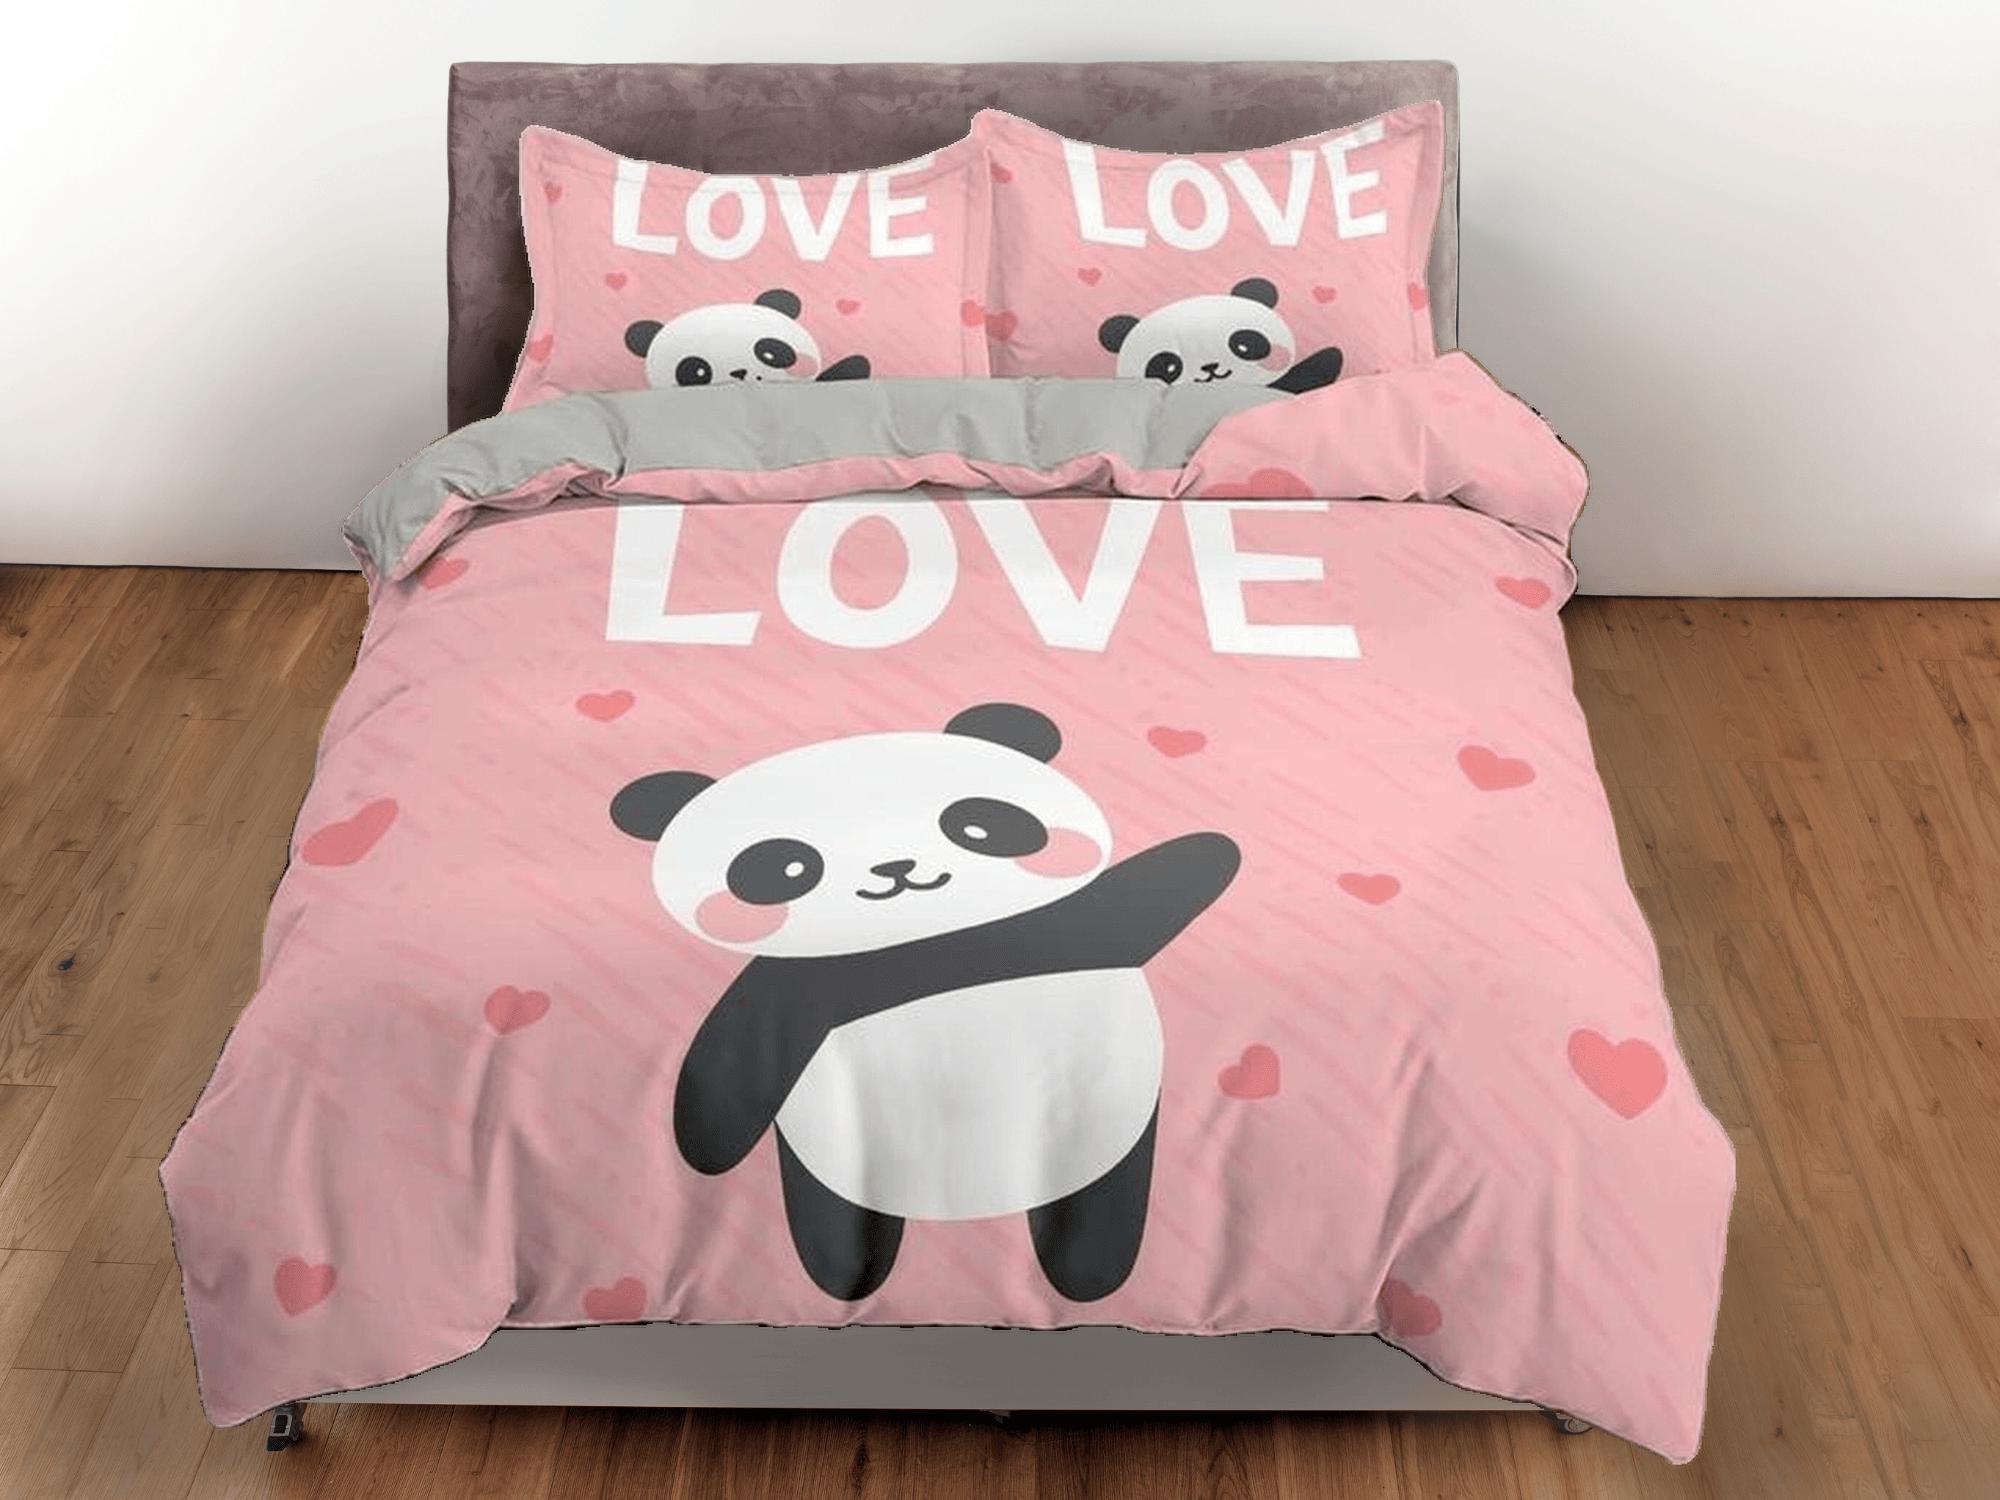 daintyduvet Love panda pink duvet cover set for kids, bedding set full, king, queen, dorm bedding, toddler bedding aesthetic panda lovers gift